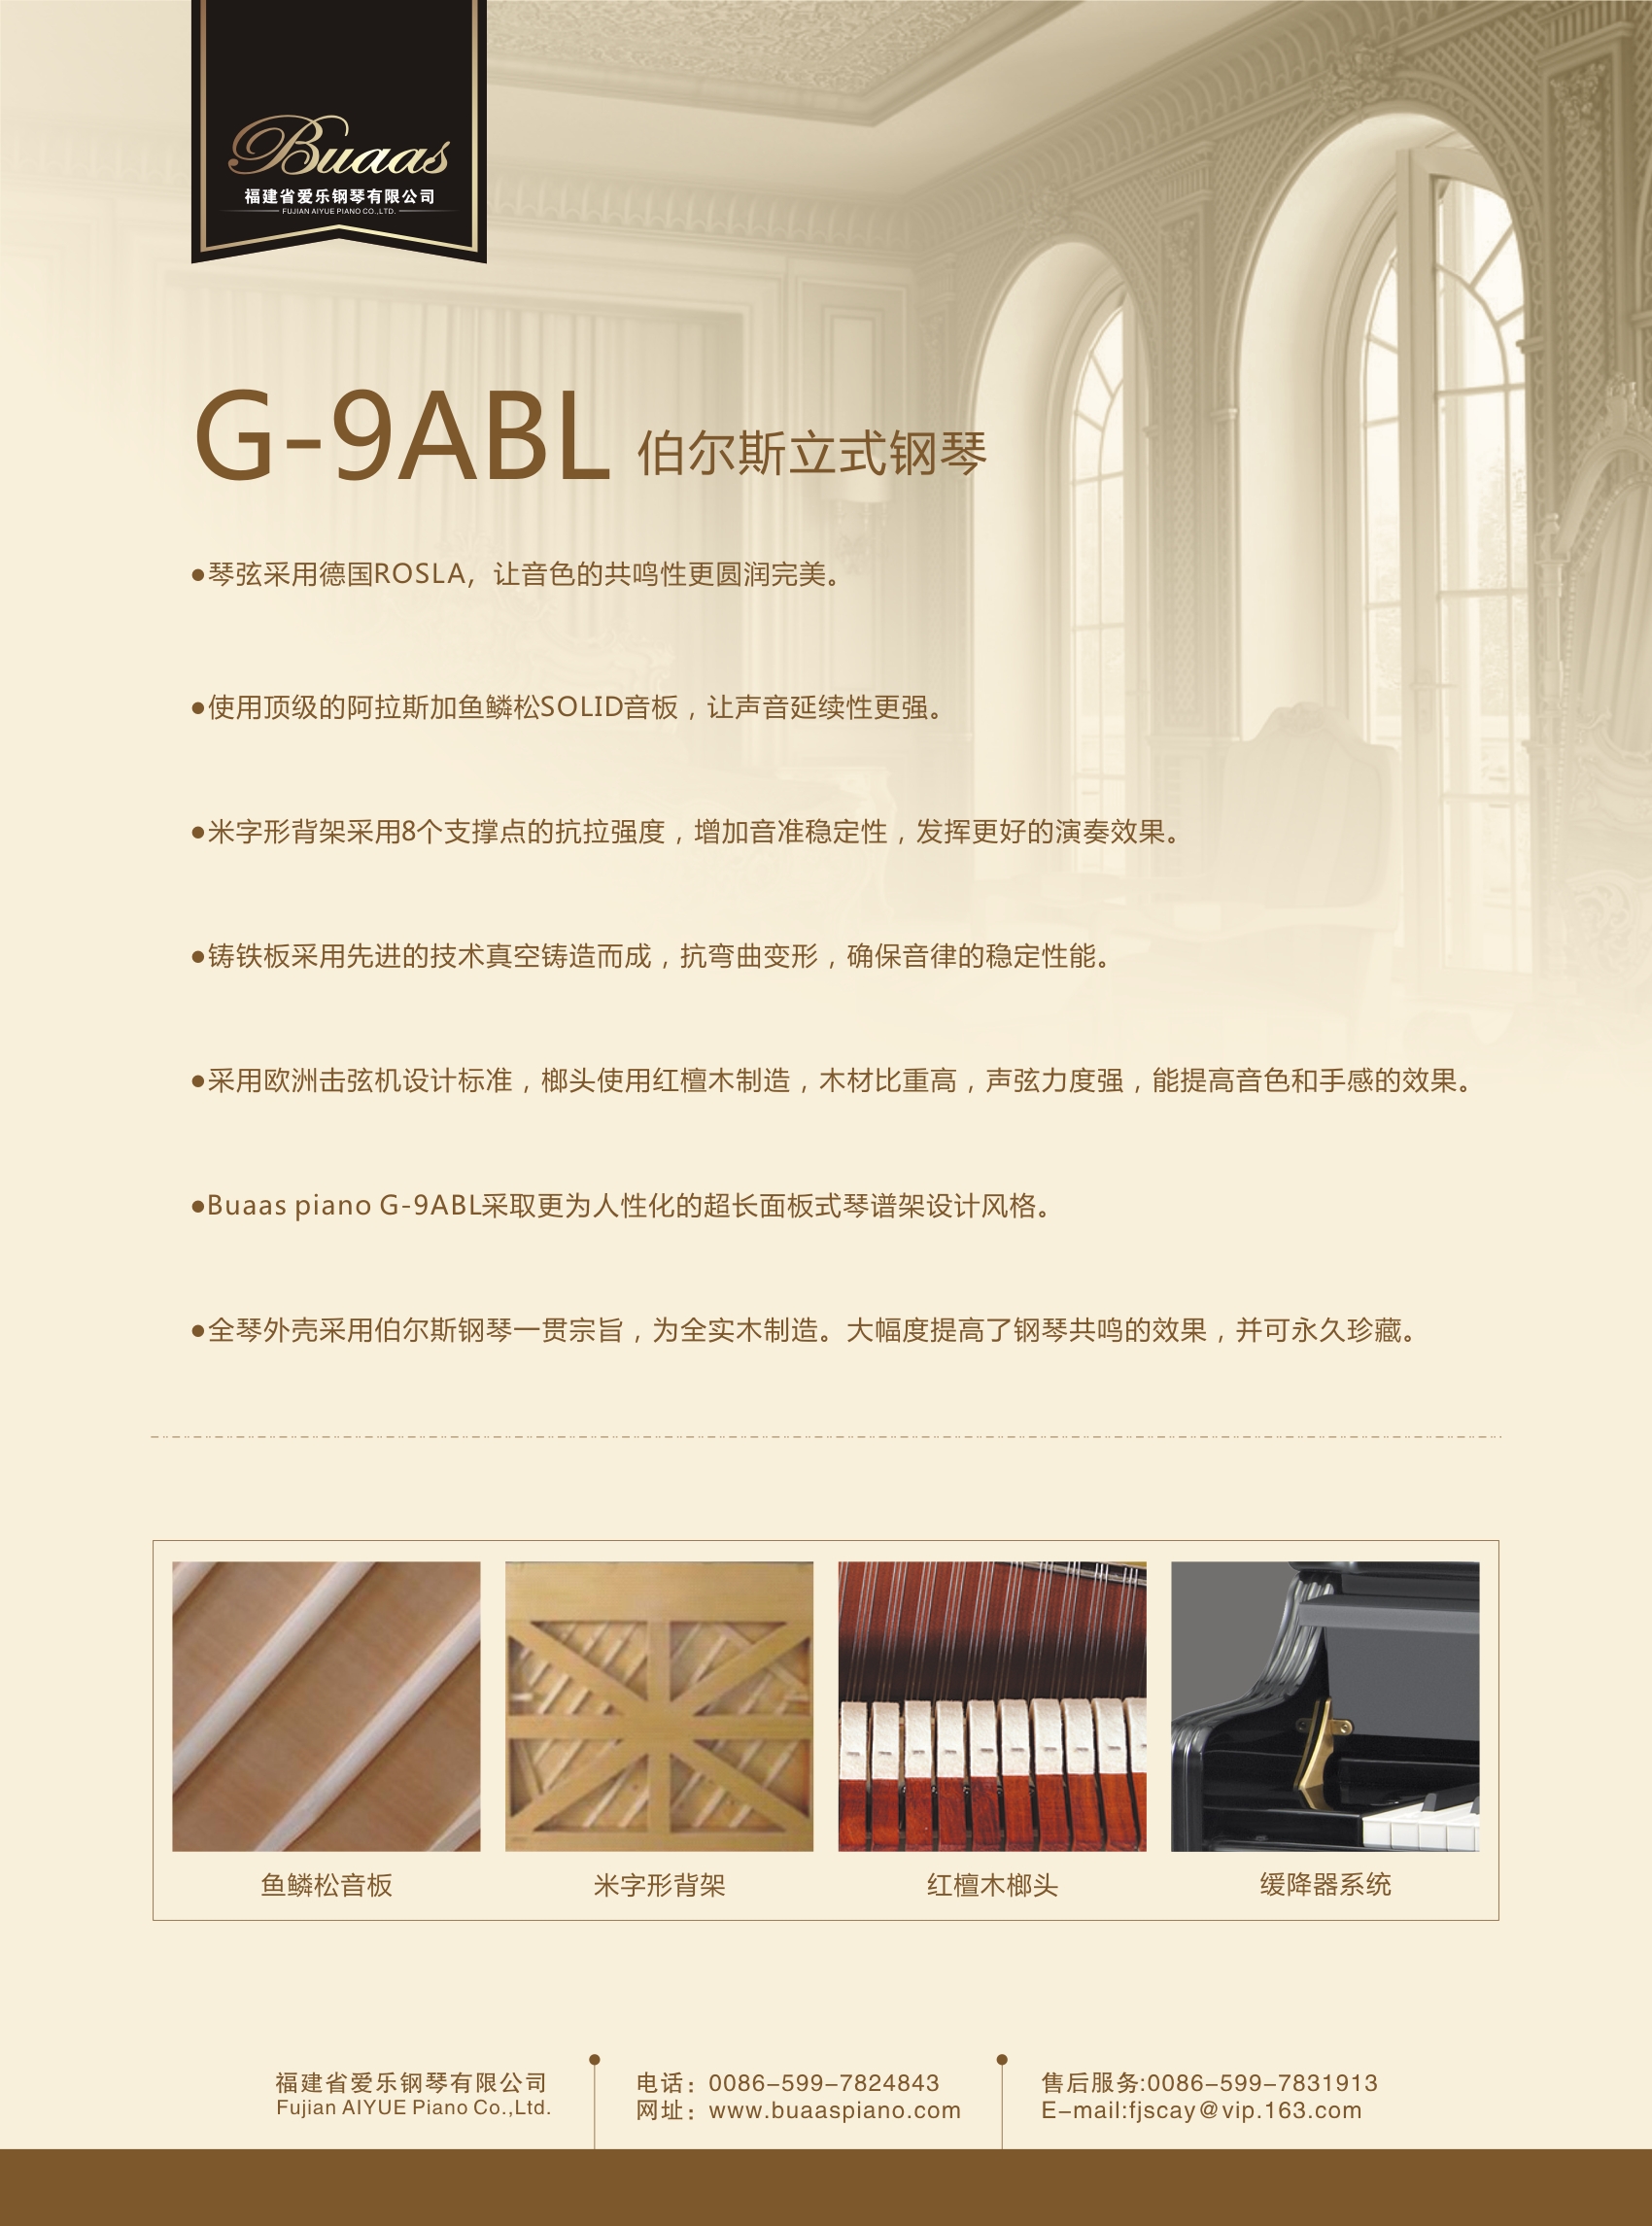 伯尔斯钢琴G-9ABL图片